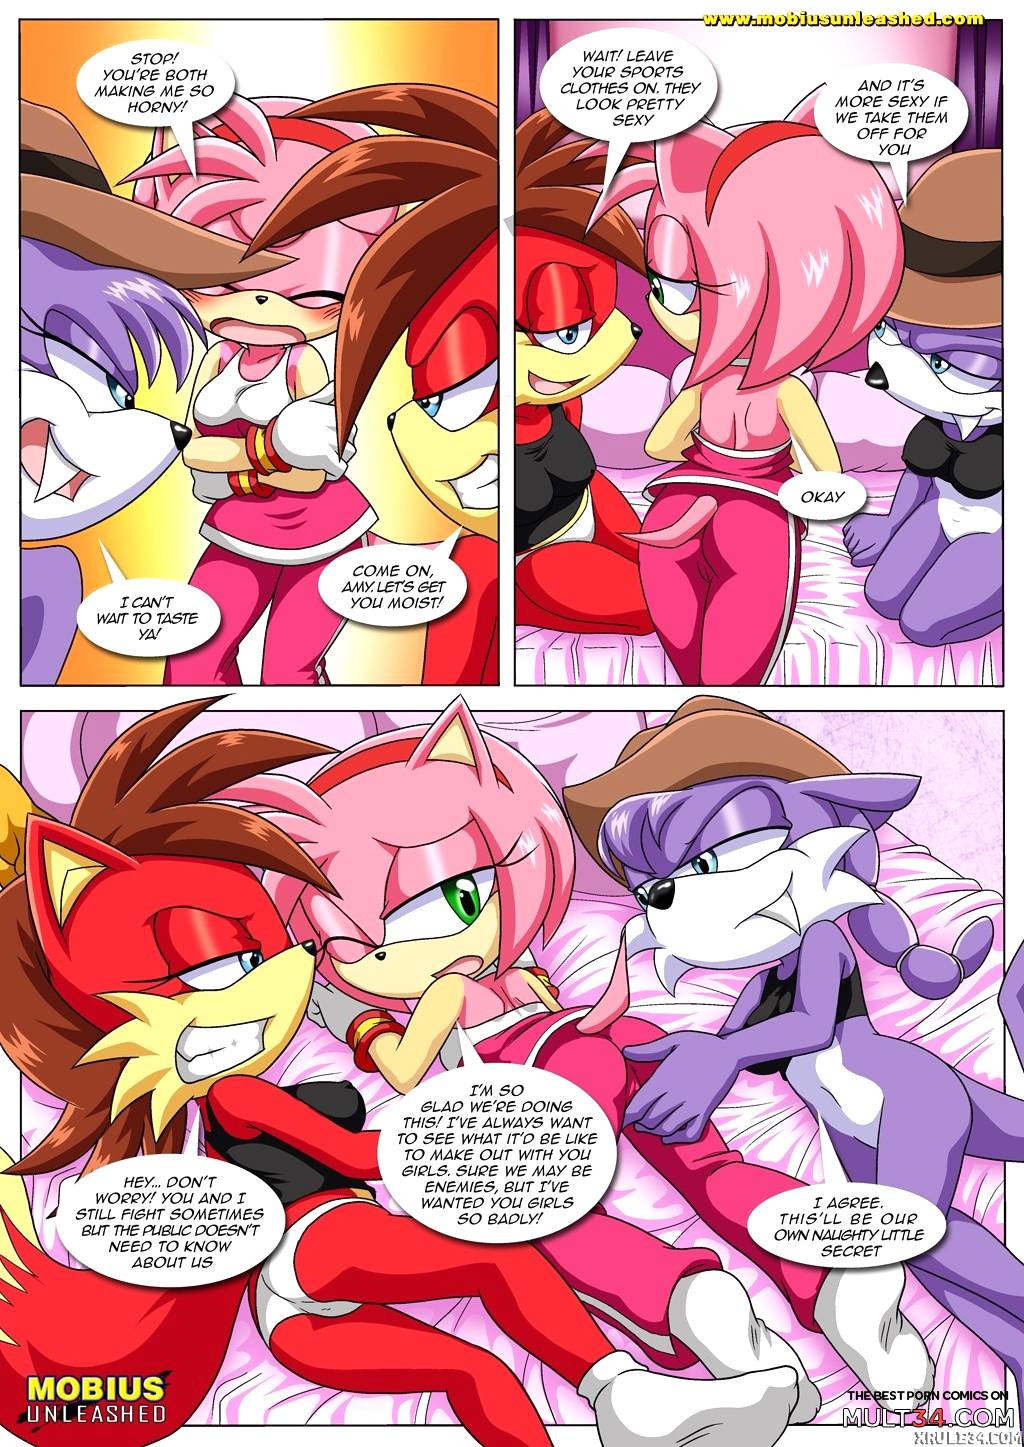 Amy's secret page 3